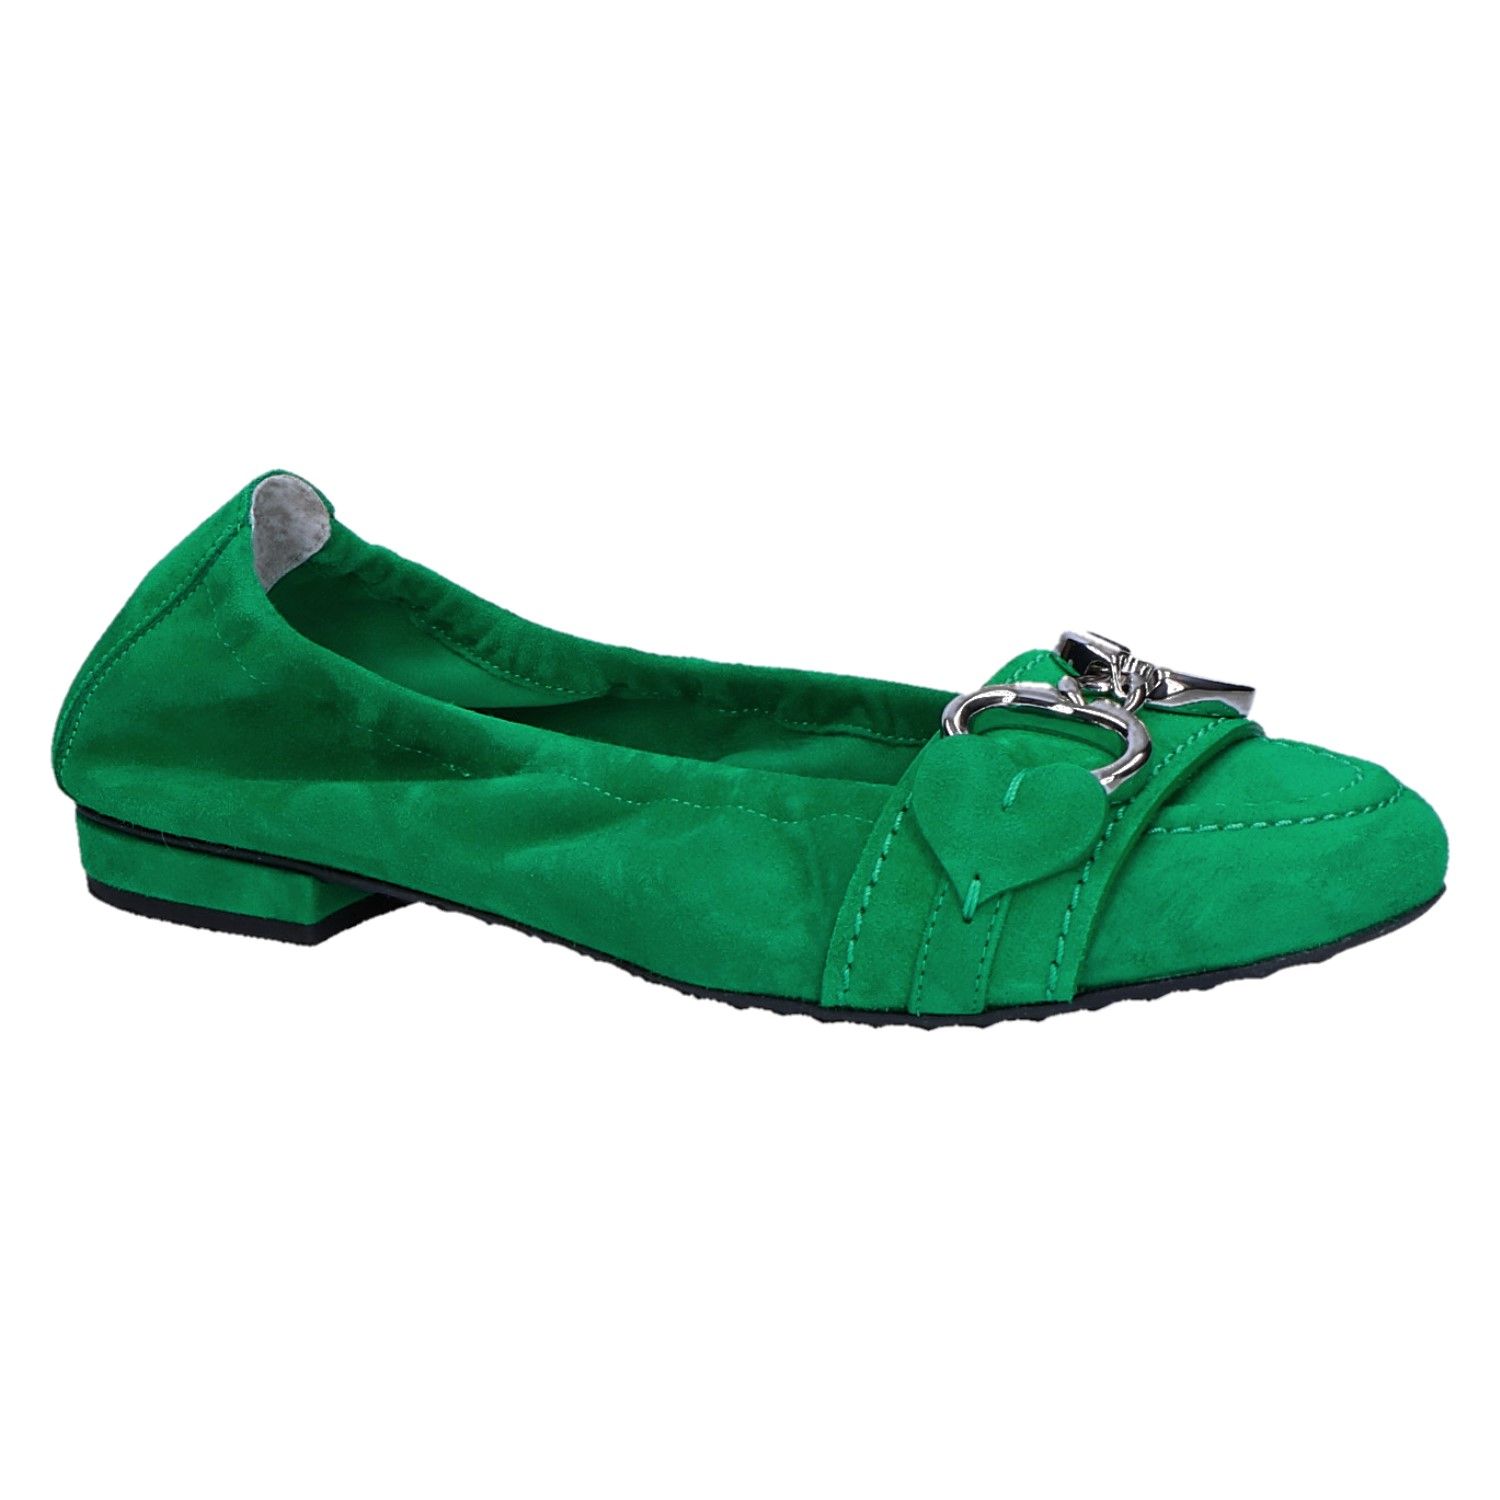 Karakteriseren adopteren Tulpen K&S 91-10040 Ballerina leaf/groen suede met artikelnummer 91-10040-502  verkrijgbaar bij Beurskens schoenmode.